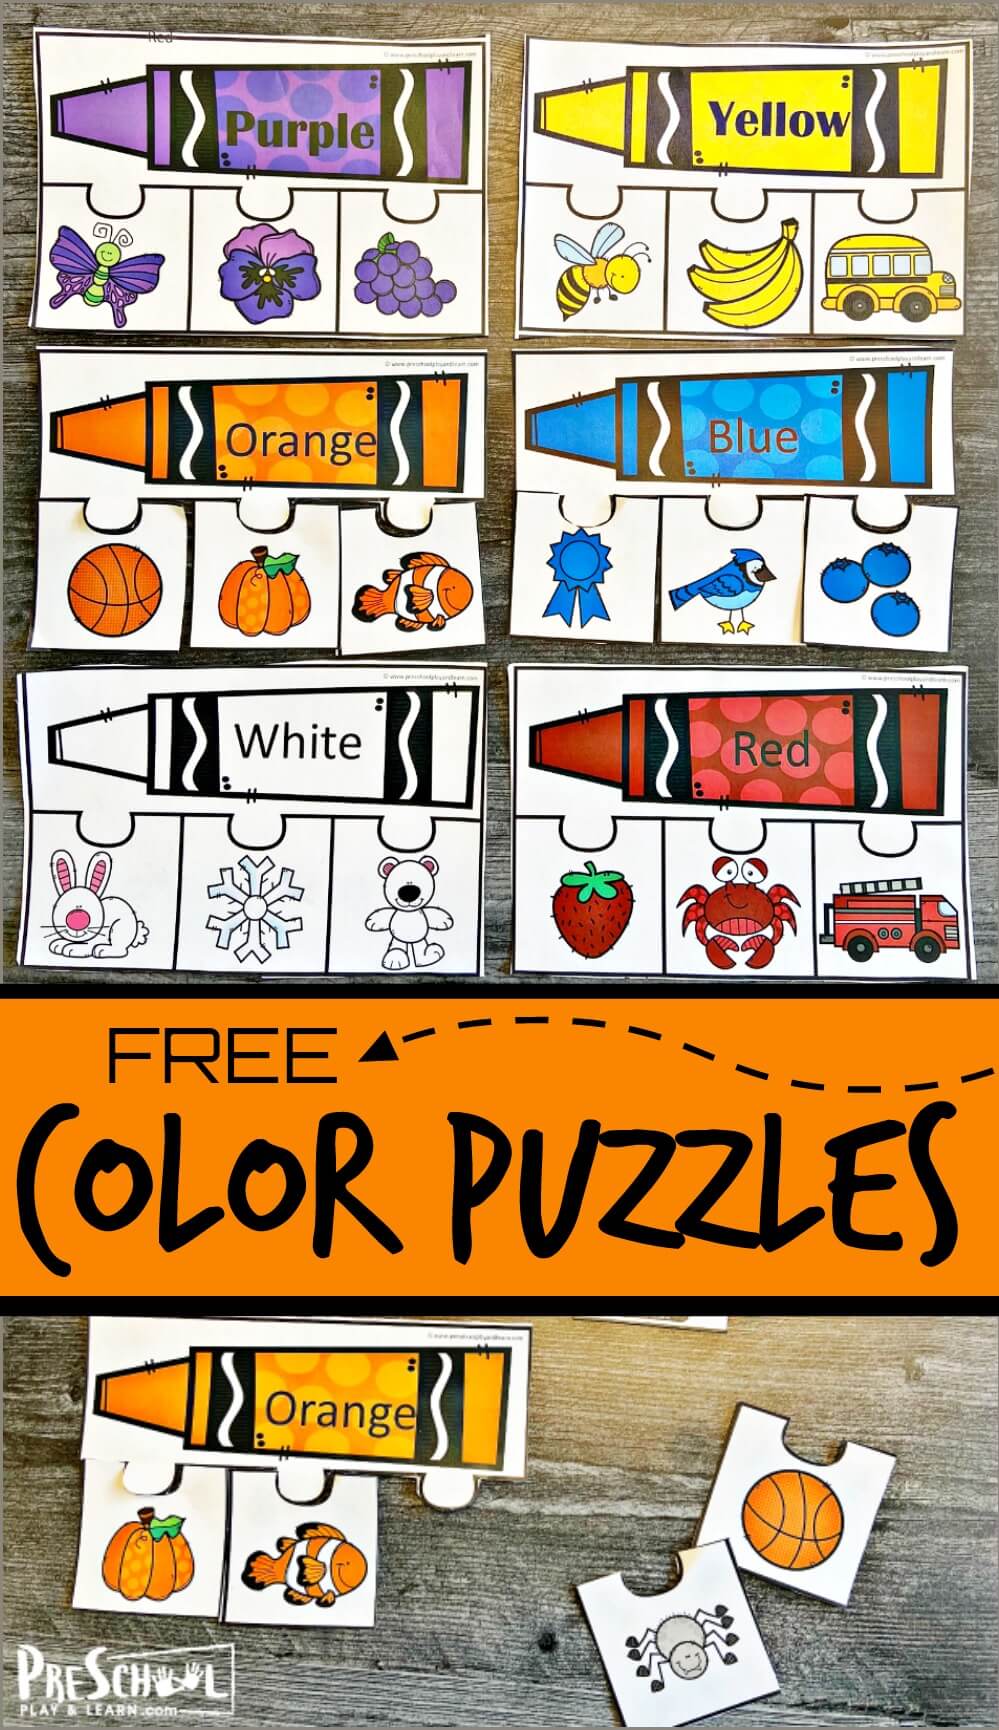 Mixing Colors Free Games, Activities, Puzzles, Online for kids, Preschool, Kindergarten